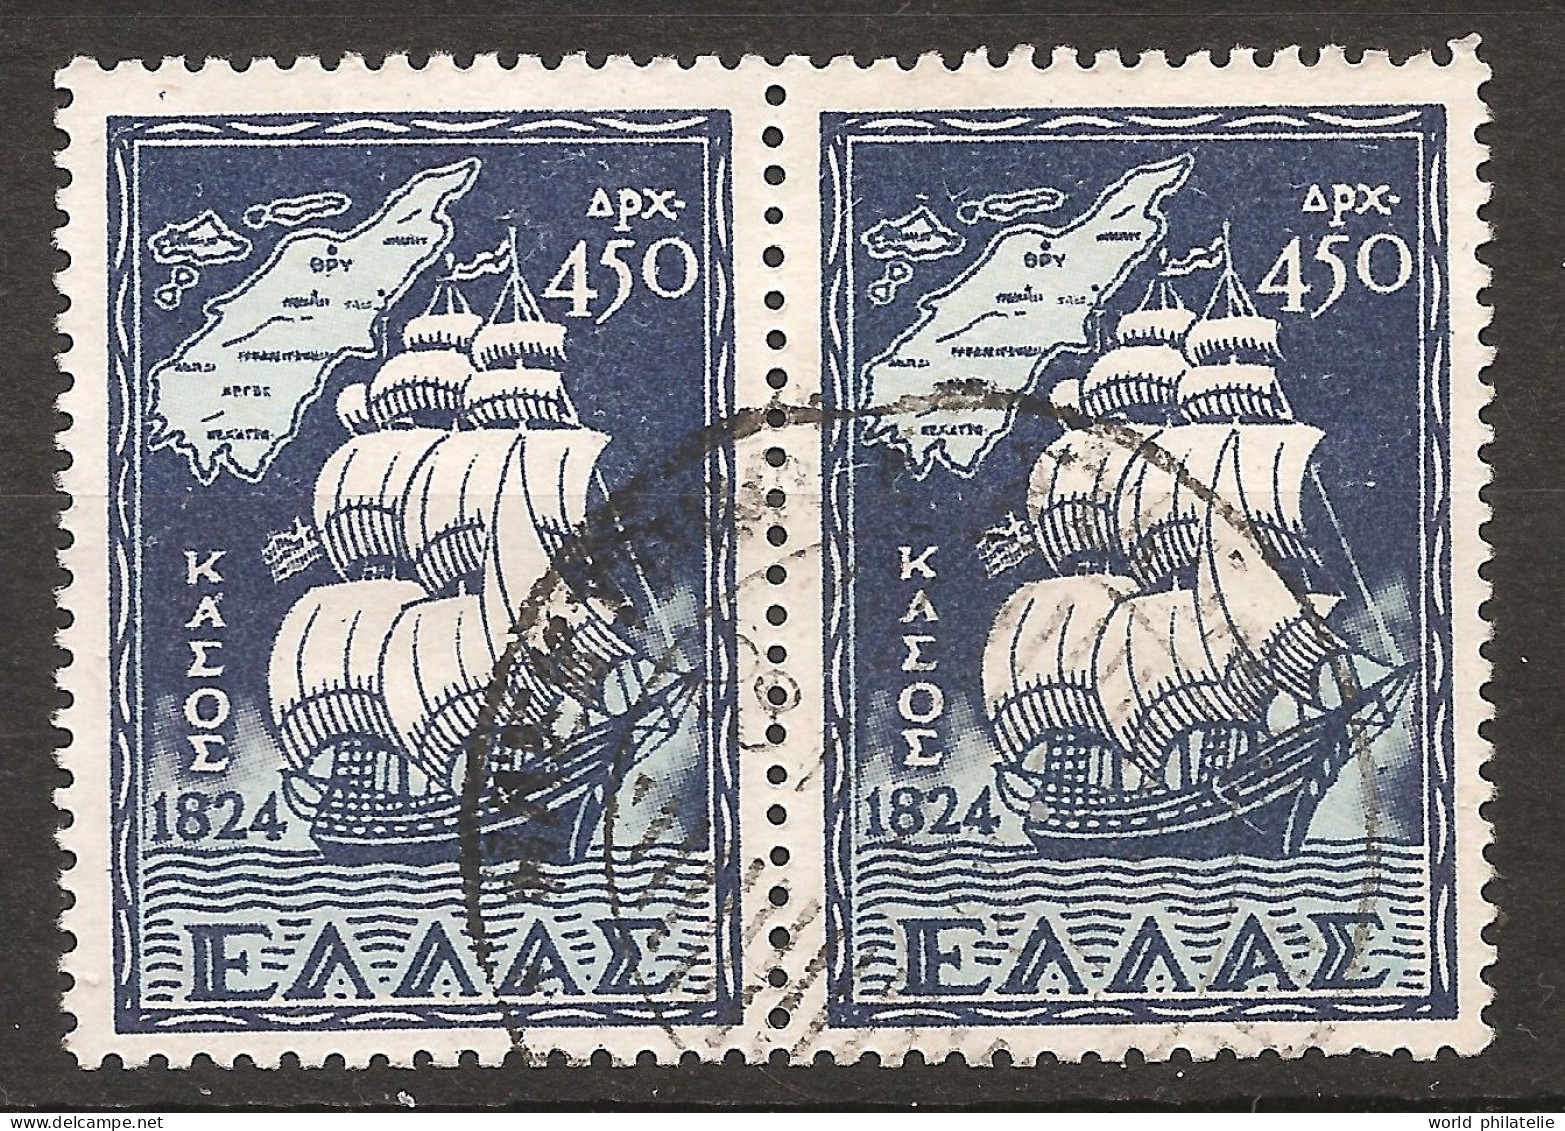 Grèce Hellas 1947 N° 558A X 2 O Retour Des îles, Dodécanèse, Voilier, Carte, Île De Cassos, Mer Égée, Rhodes, Iliade - Used Stamps